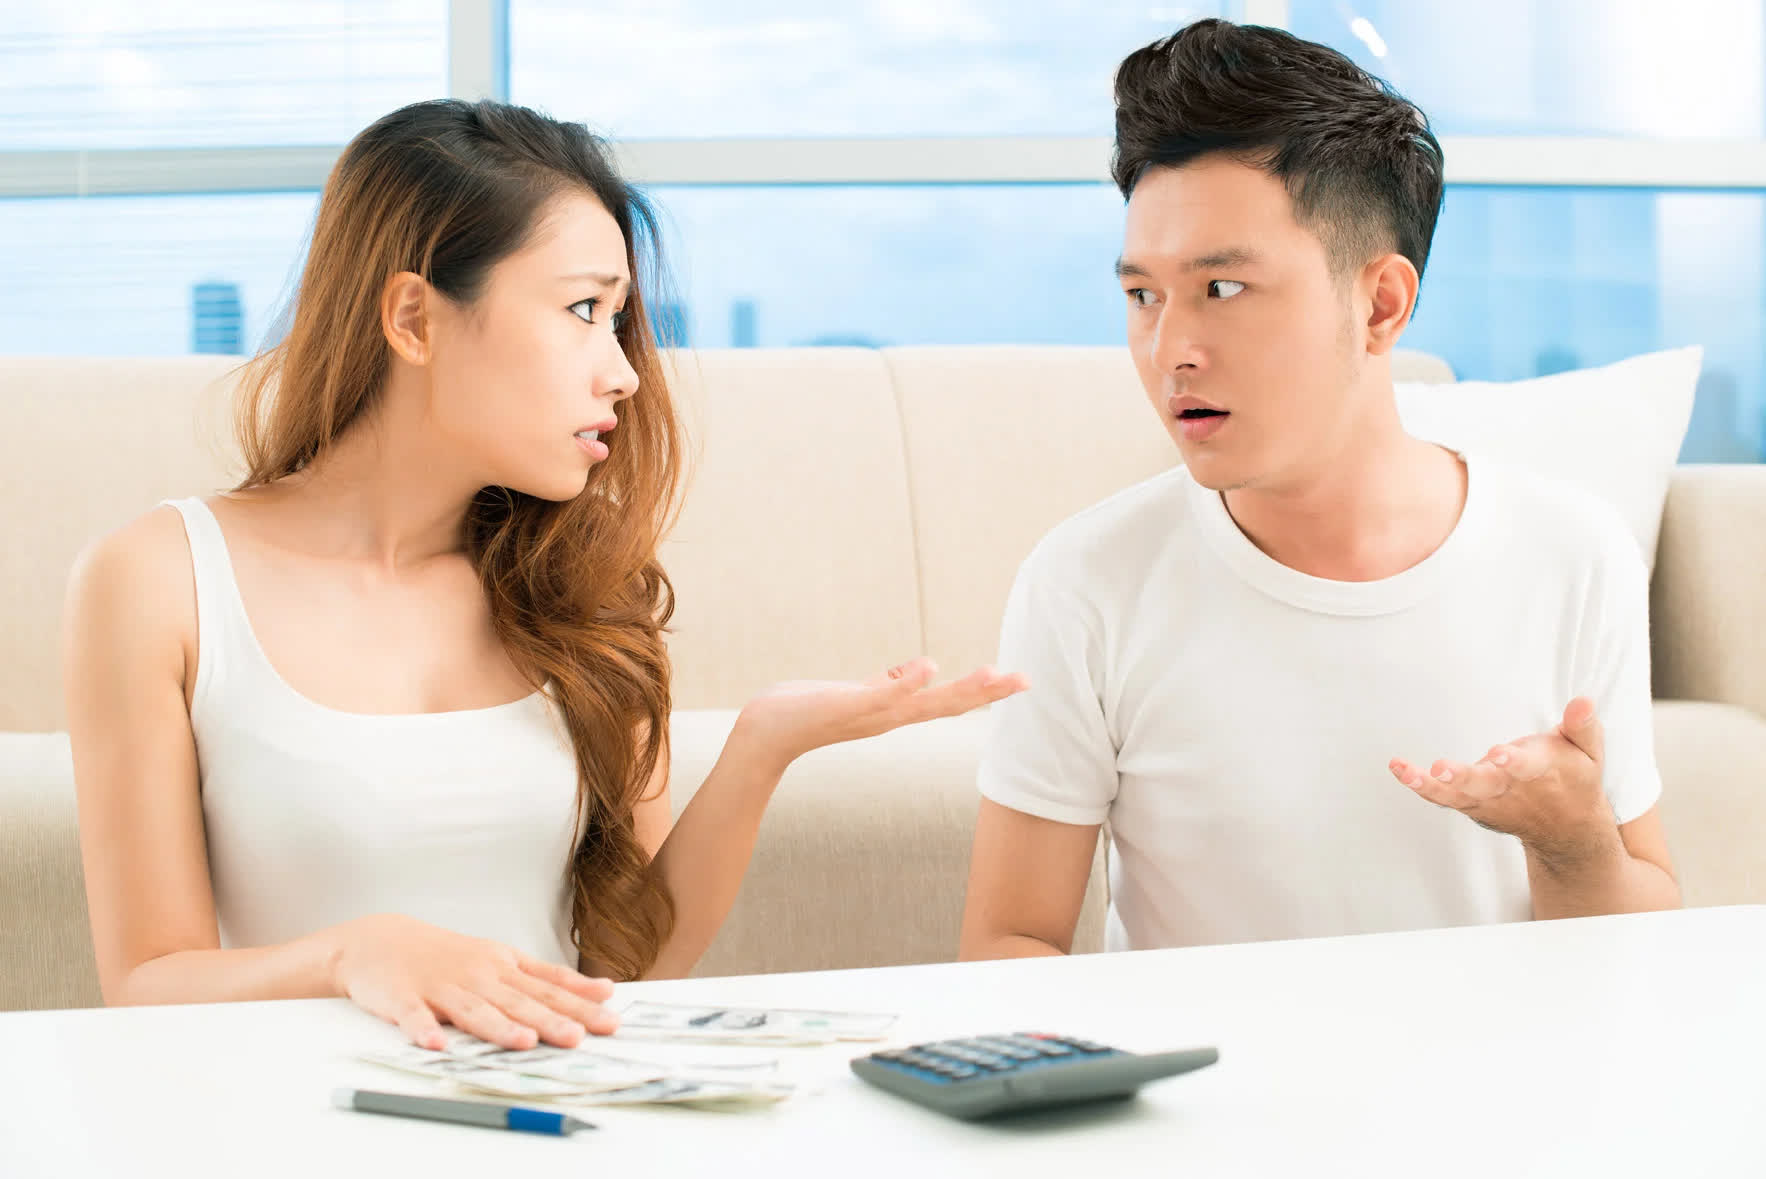 5 bí quyết giúp vợ chồng lắng nghe nhau, tránh mâu thuẫn, cãi vã suốt ngày - Ảnh 1